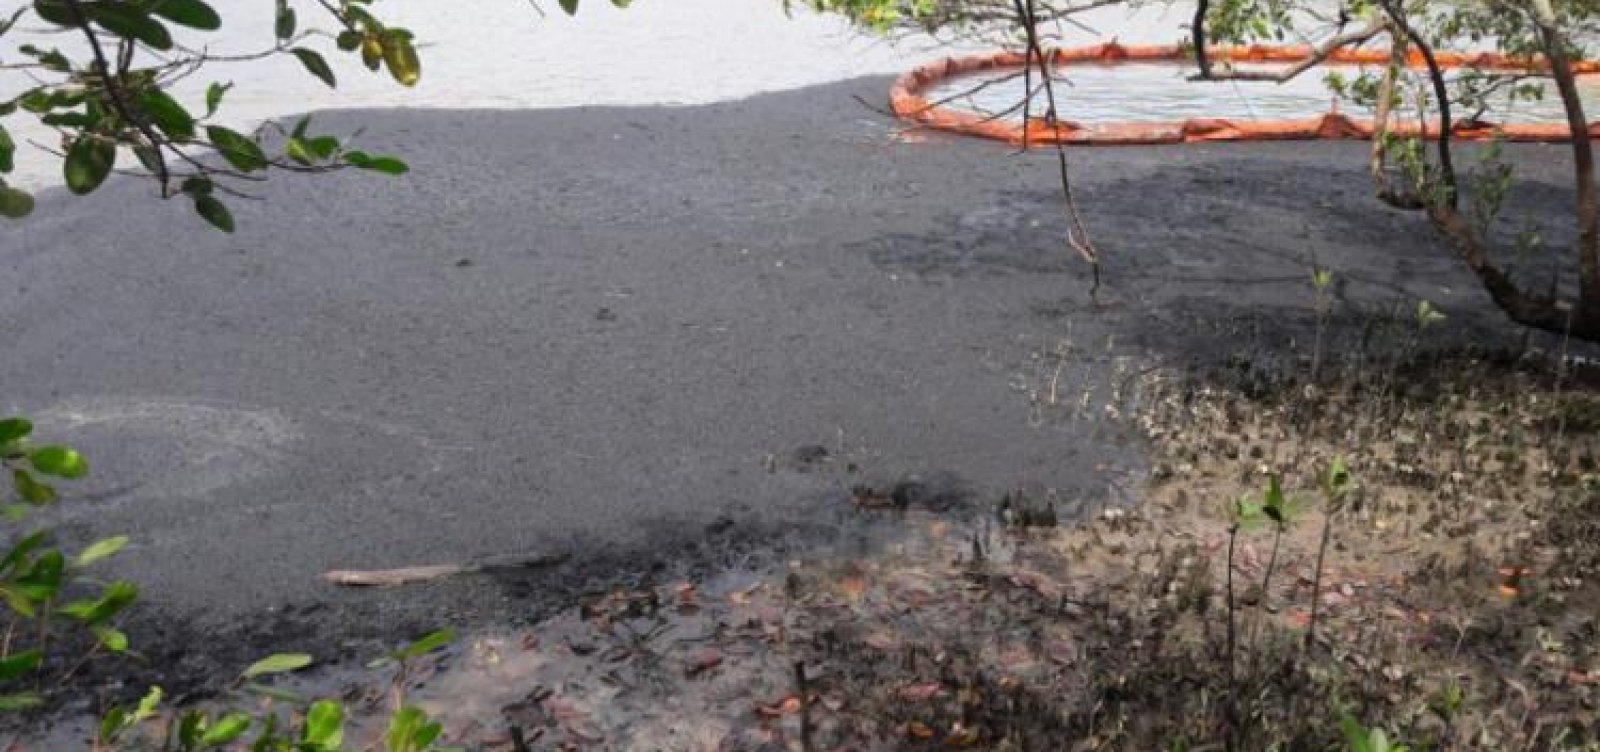 Vazamento de óleo causa problemas ambientais na Região Metropolitana de Salvador